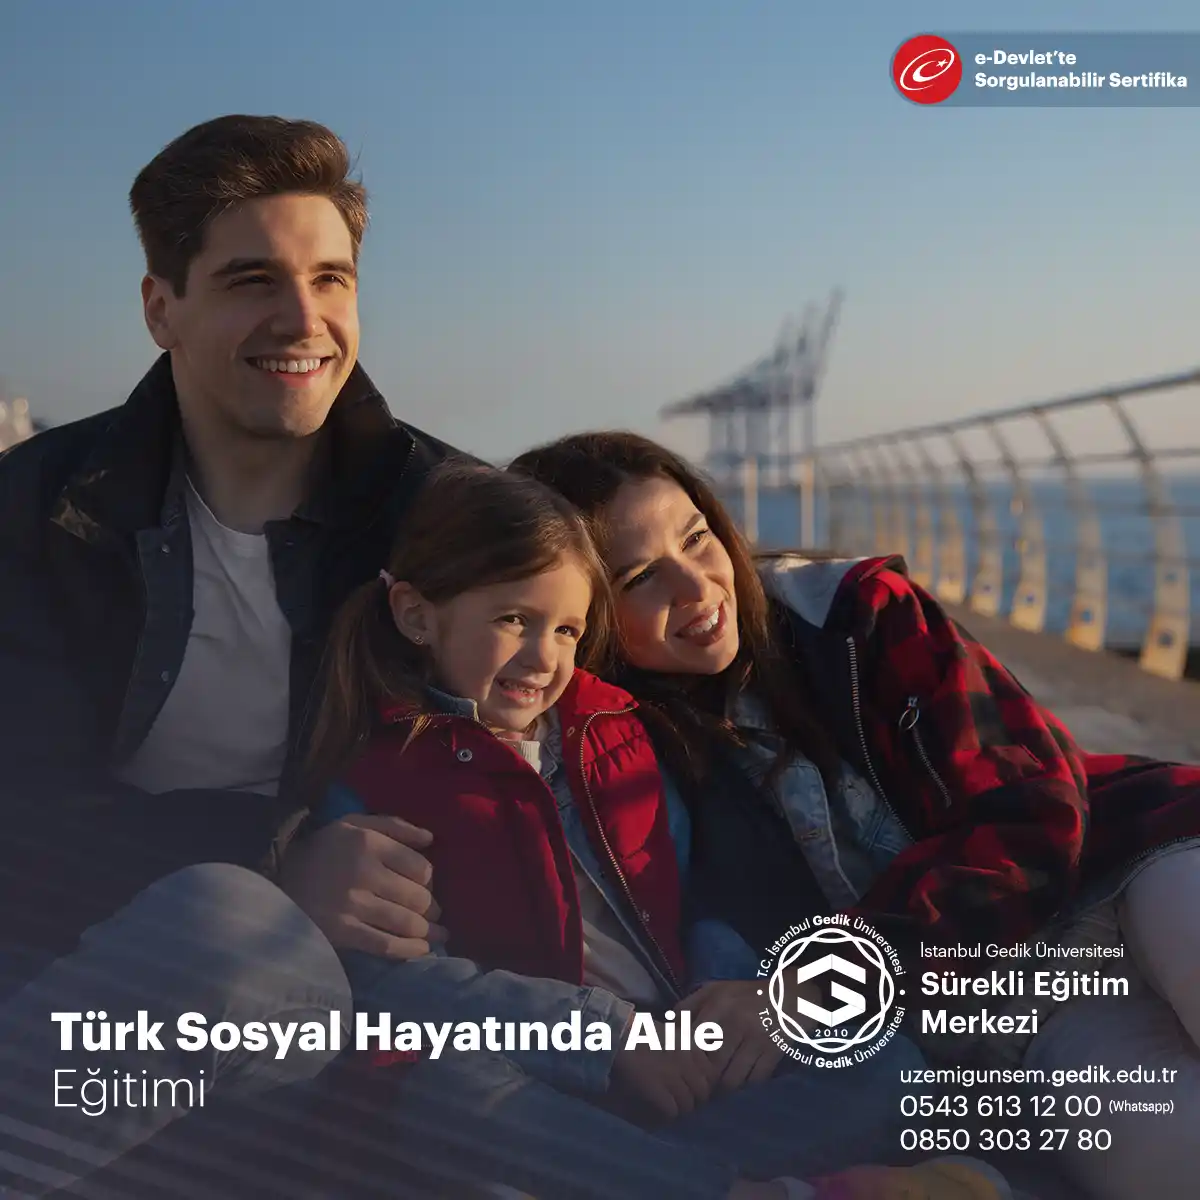 Türk sosyal hayatında aile, toplumun temel yapı taşı olarak kabul edilir ve büyük bir öneme sahiptir.